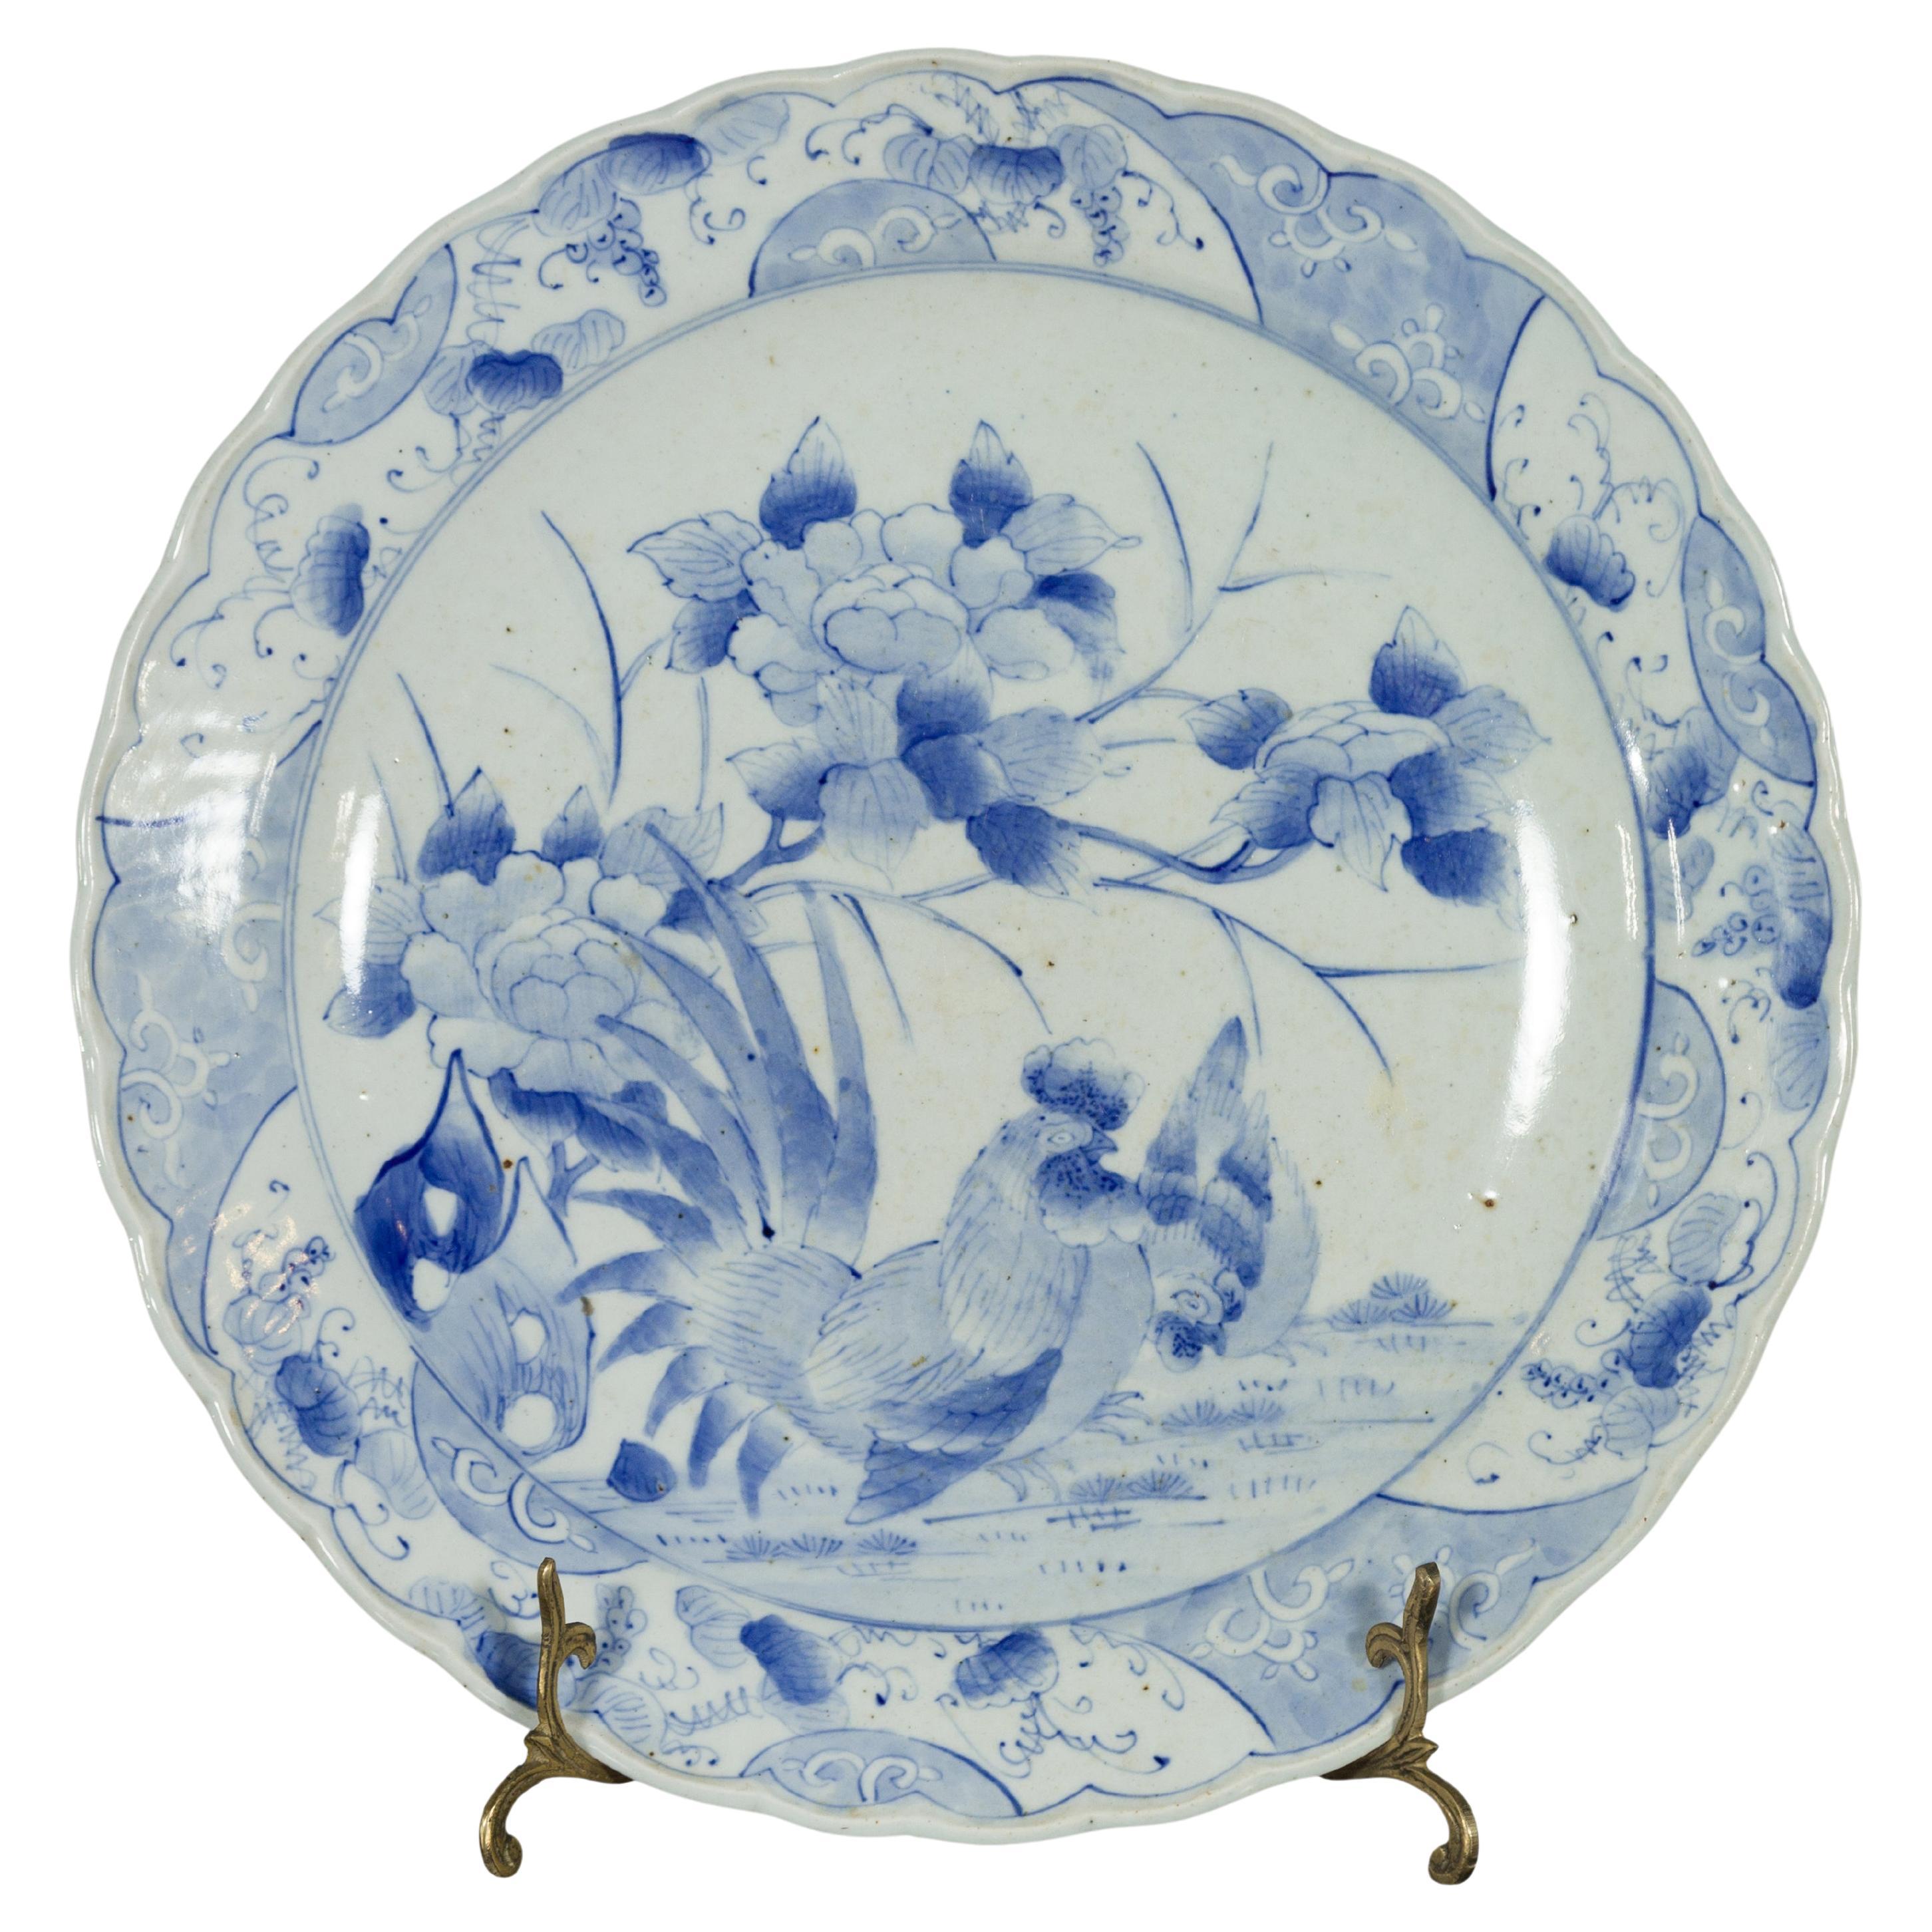 Assiette japonaise du 19ème siècle en porcelaine bleue et blanche peinte à la main avec coqs